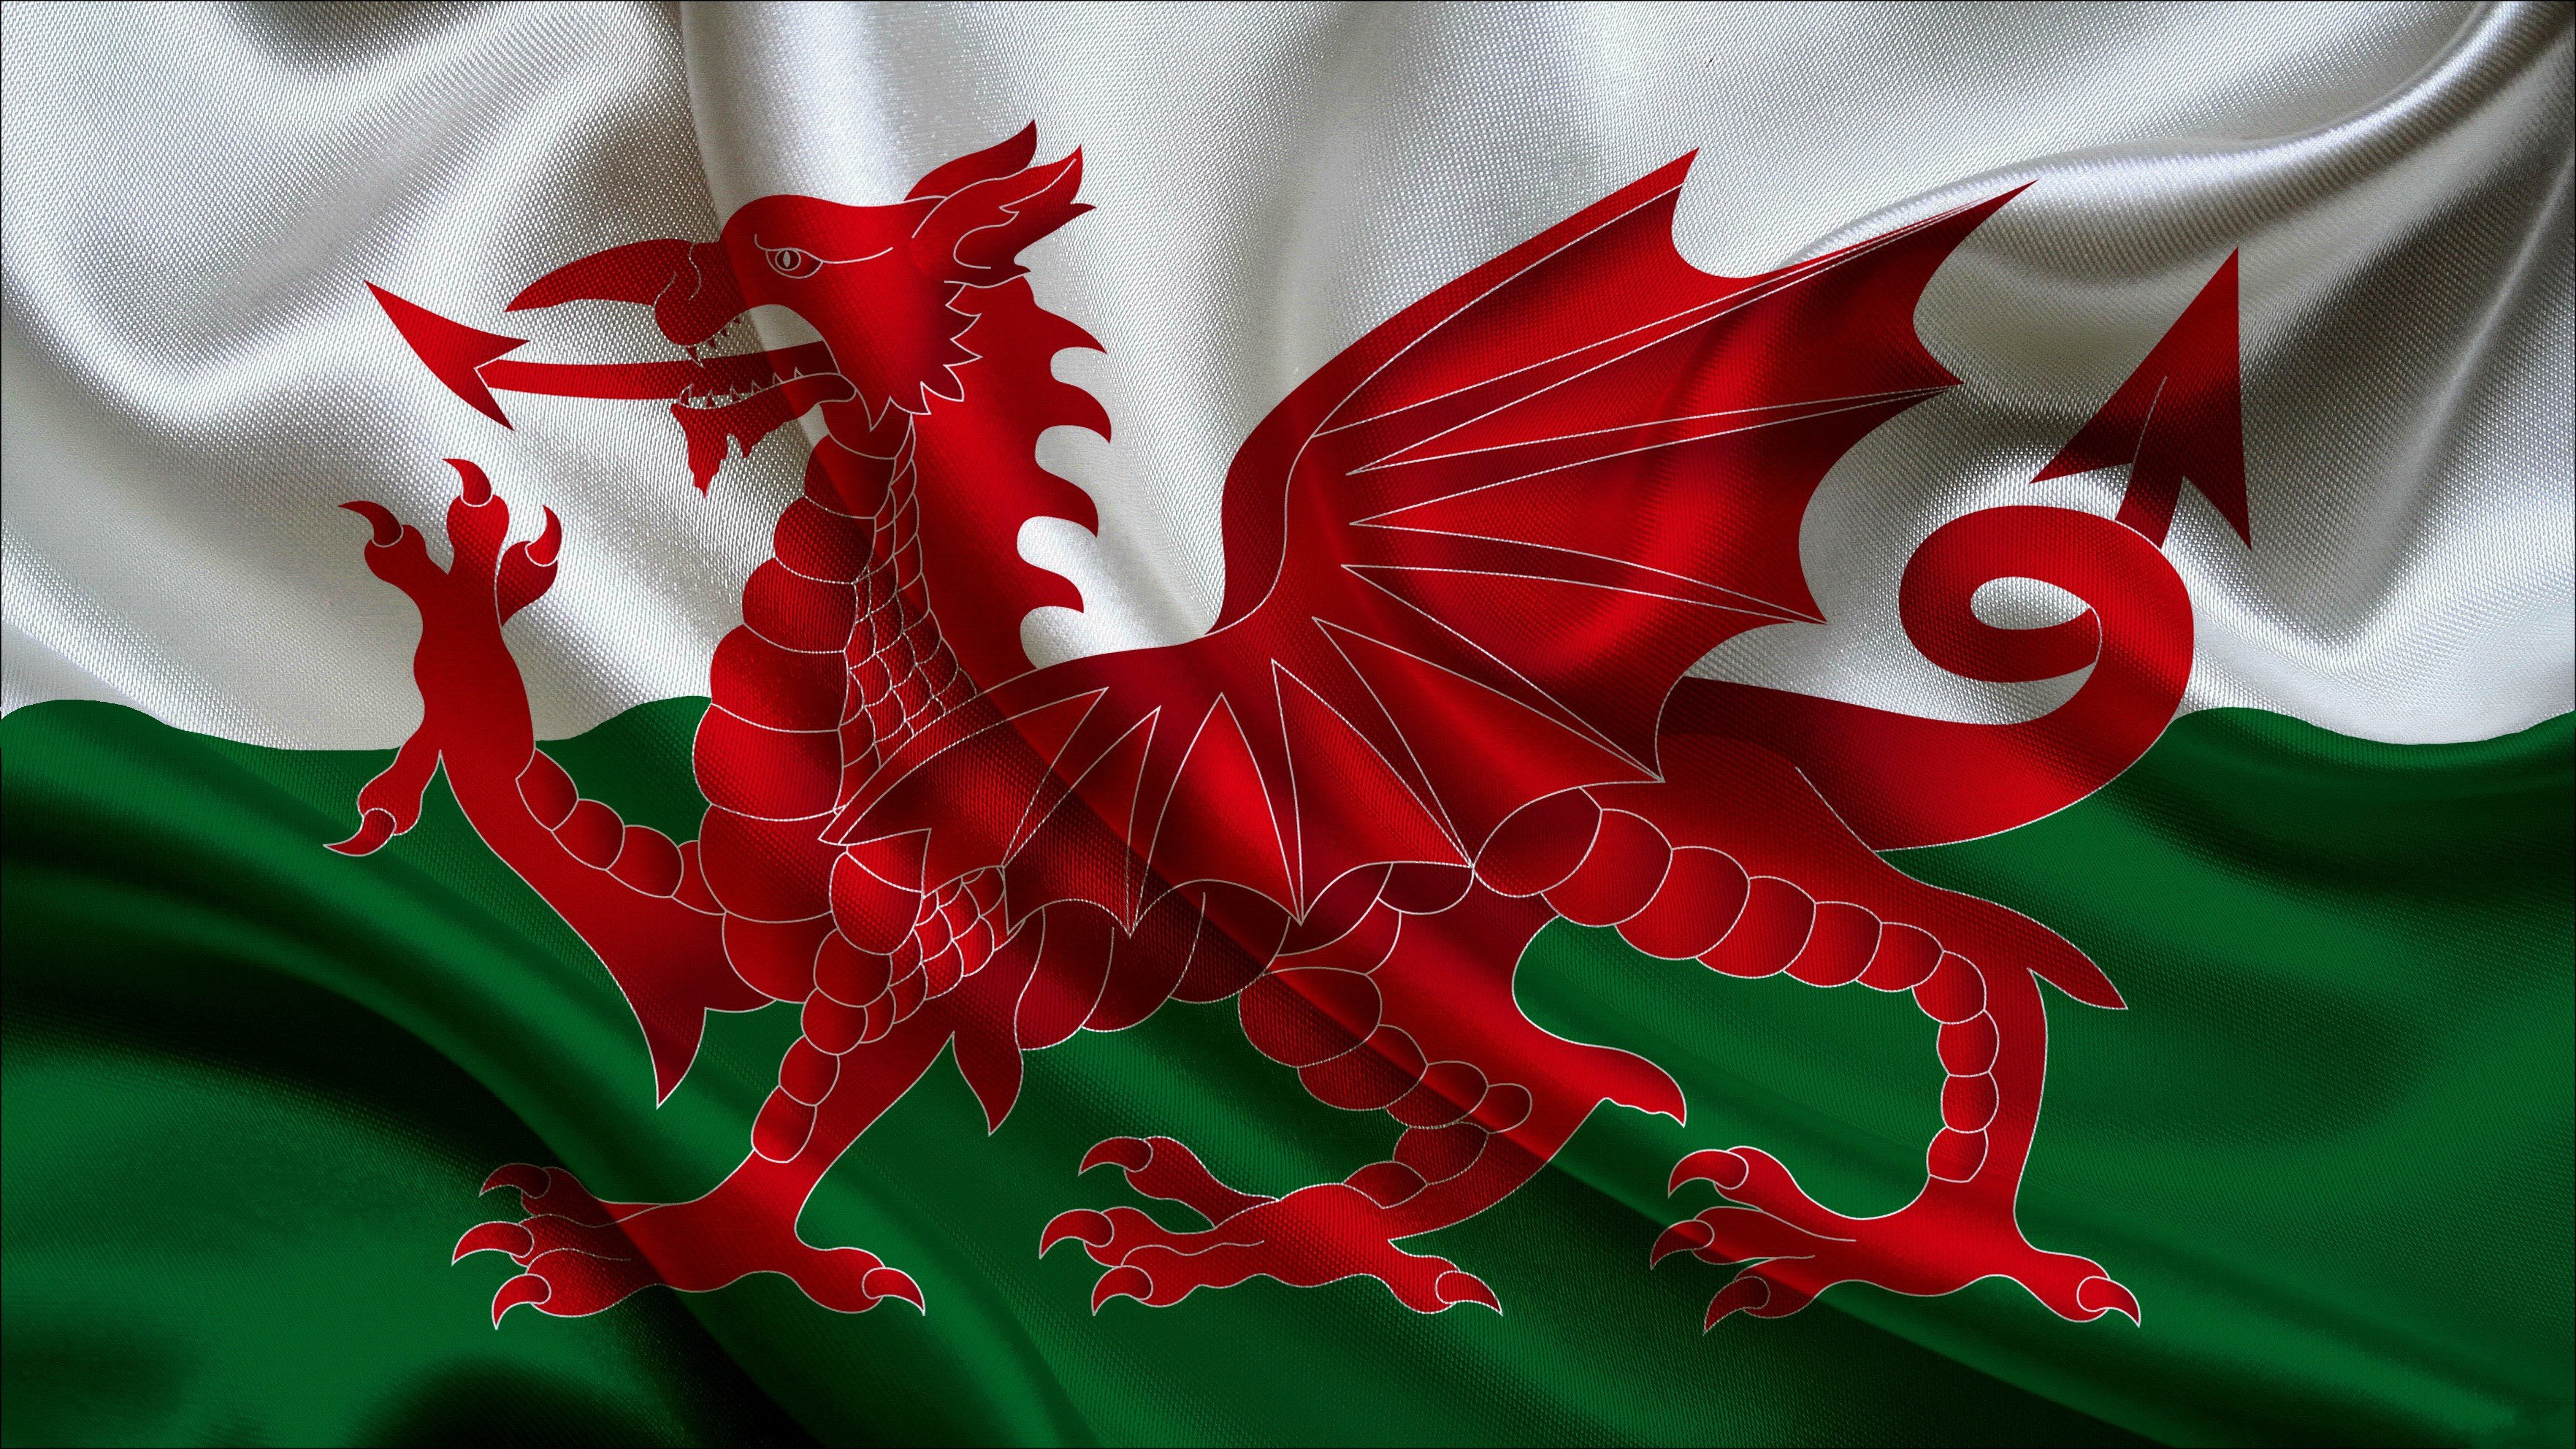 Дракон на гербе города россии. Красный дракон на флаге Уэльса. Флаг Уэльса. Флаг Вейлс дракон. Флаг страны Уэльс.